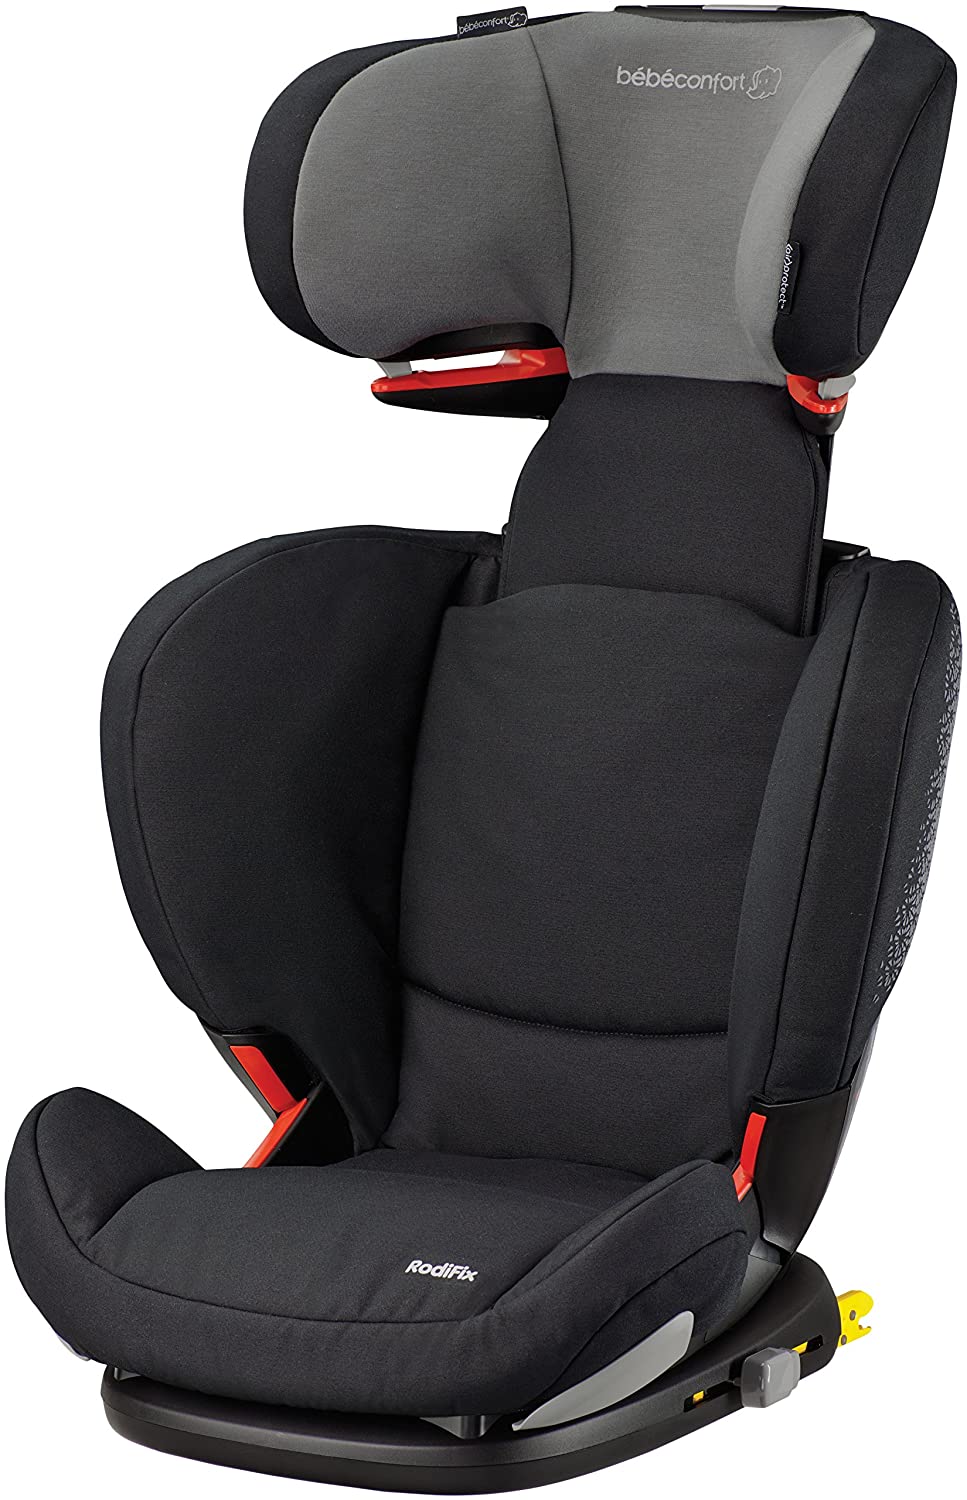 BEBE CONFORT Bébé Confort RodiFIX Air Protect Child Seat – Choice of Colors Classic